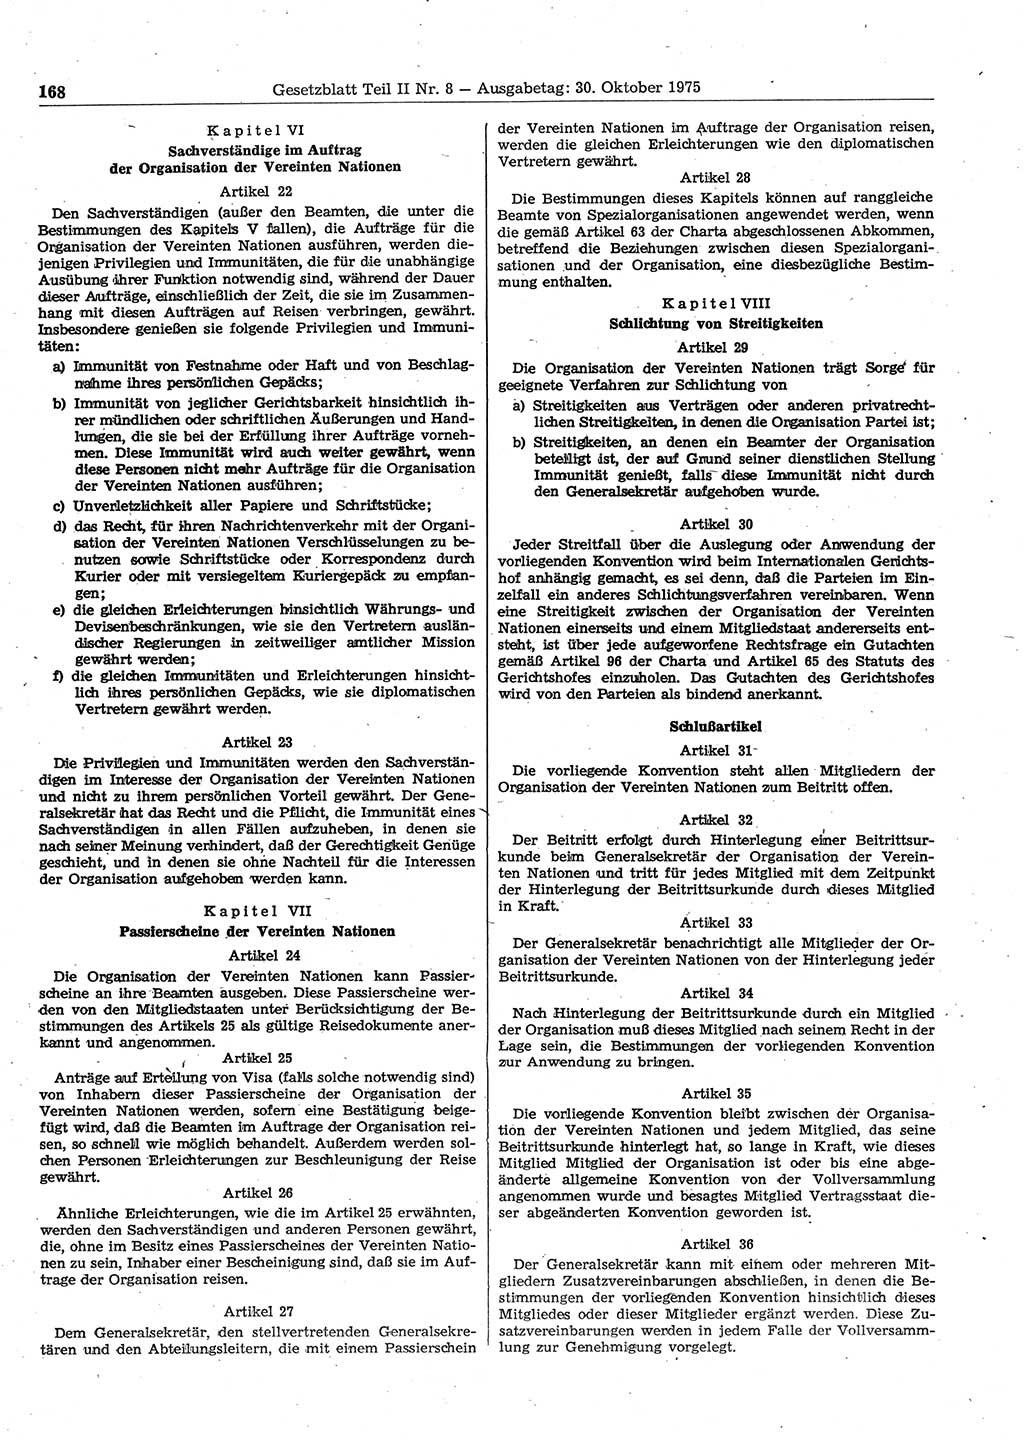 Gesetzblatt (GBl.) der Deutschen Demokratischen Republik (DDR) Teil ⅠⅠ 1975, Seite 168 (GBl. DDR ⅠⅠ 1975, S. 168)